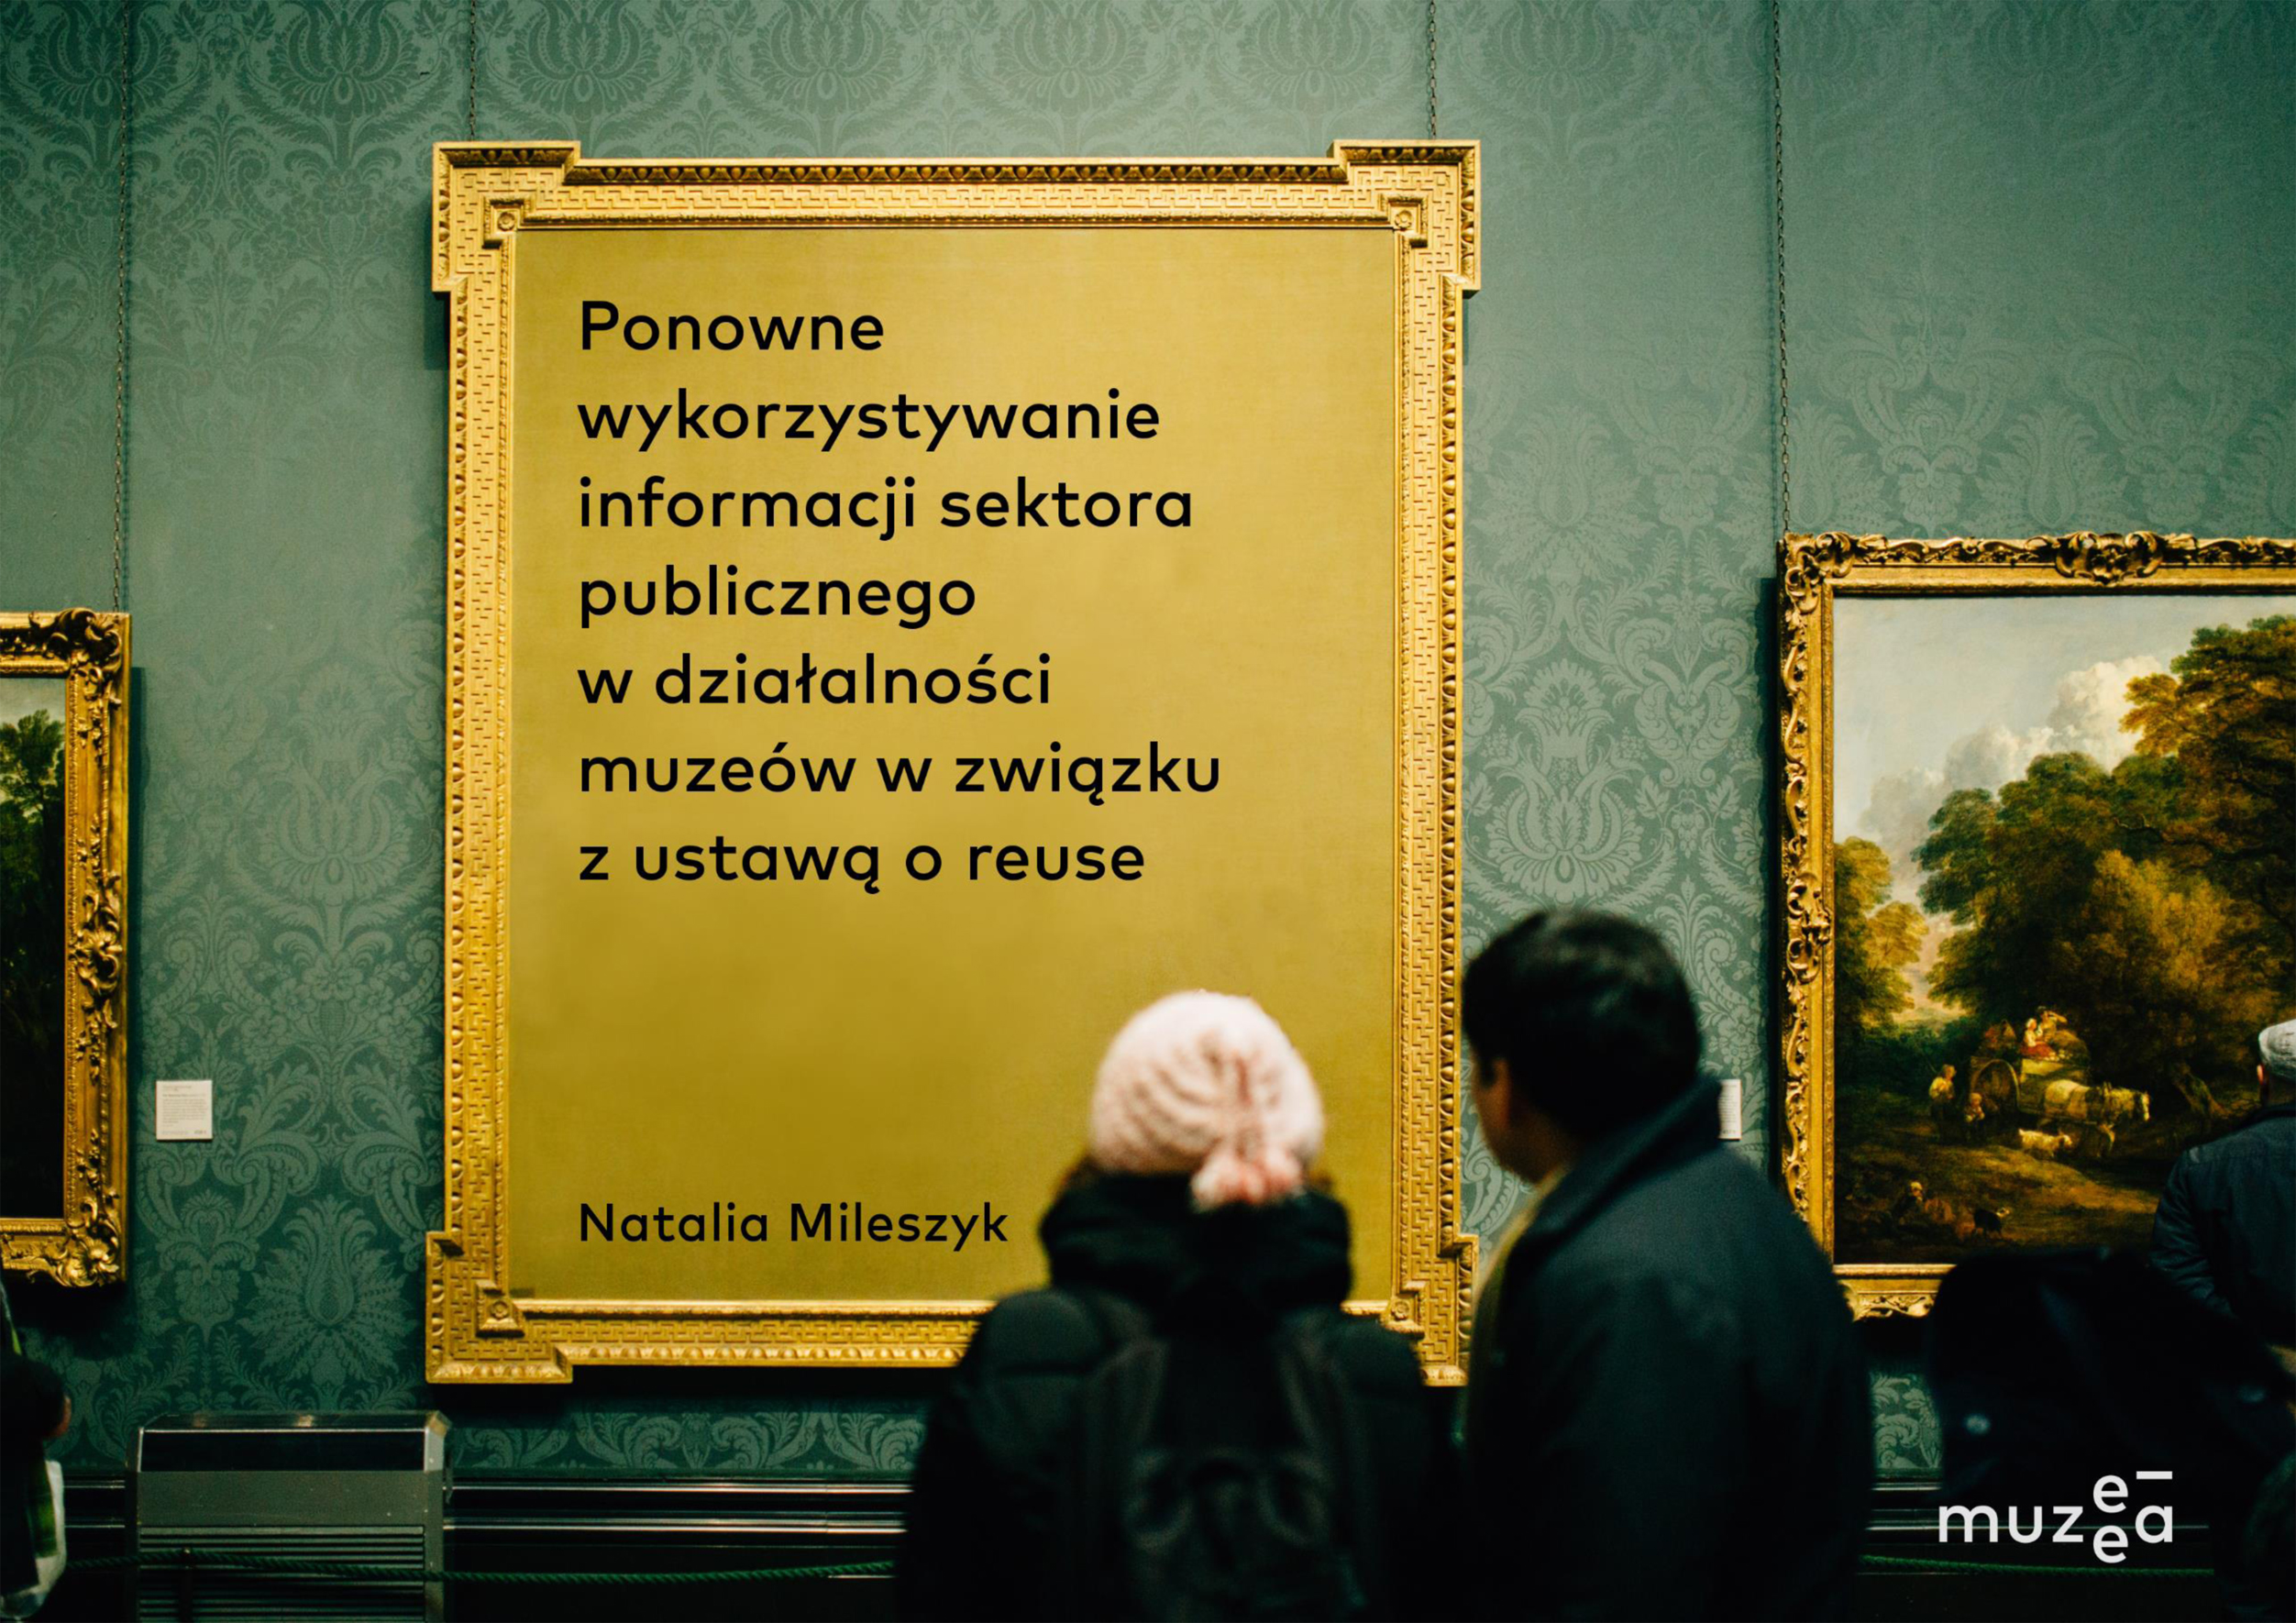 Ponowne wykorzystanie informacji sektora publicznego w działalności muzeów w związku z ustawą o reuse